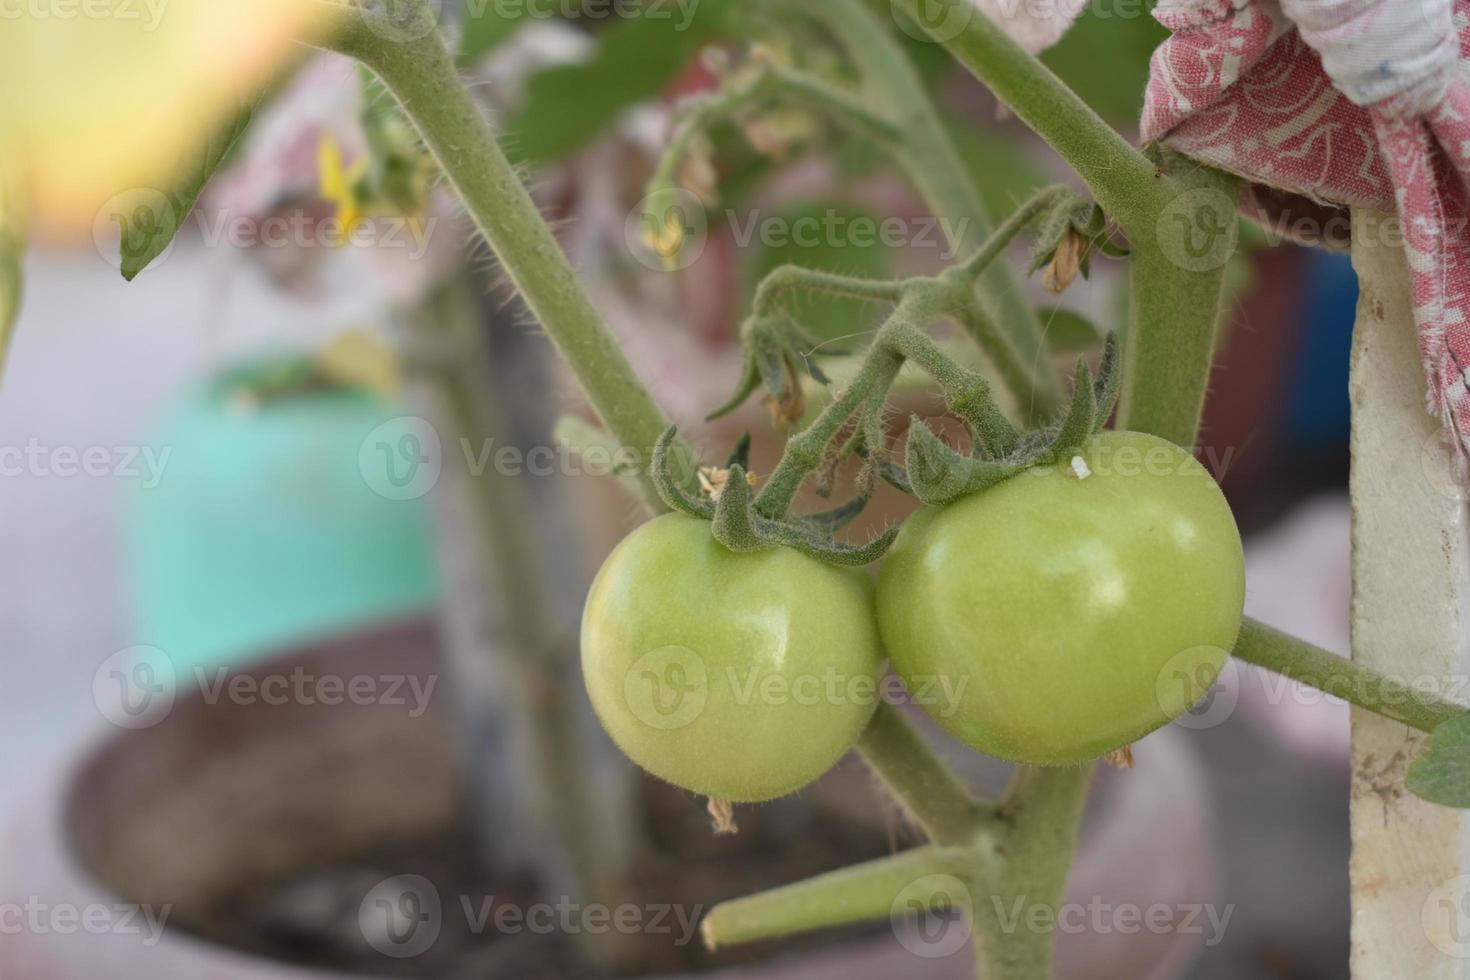 verde Tomates en el planta foto